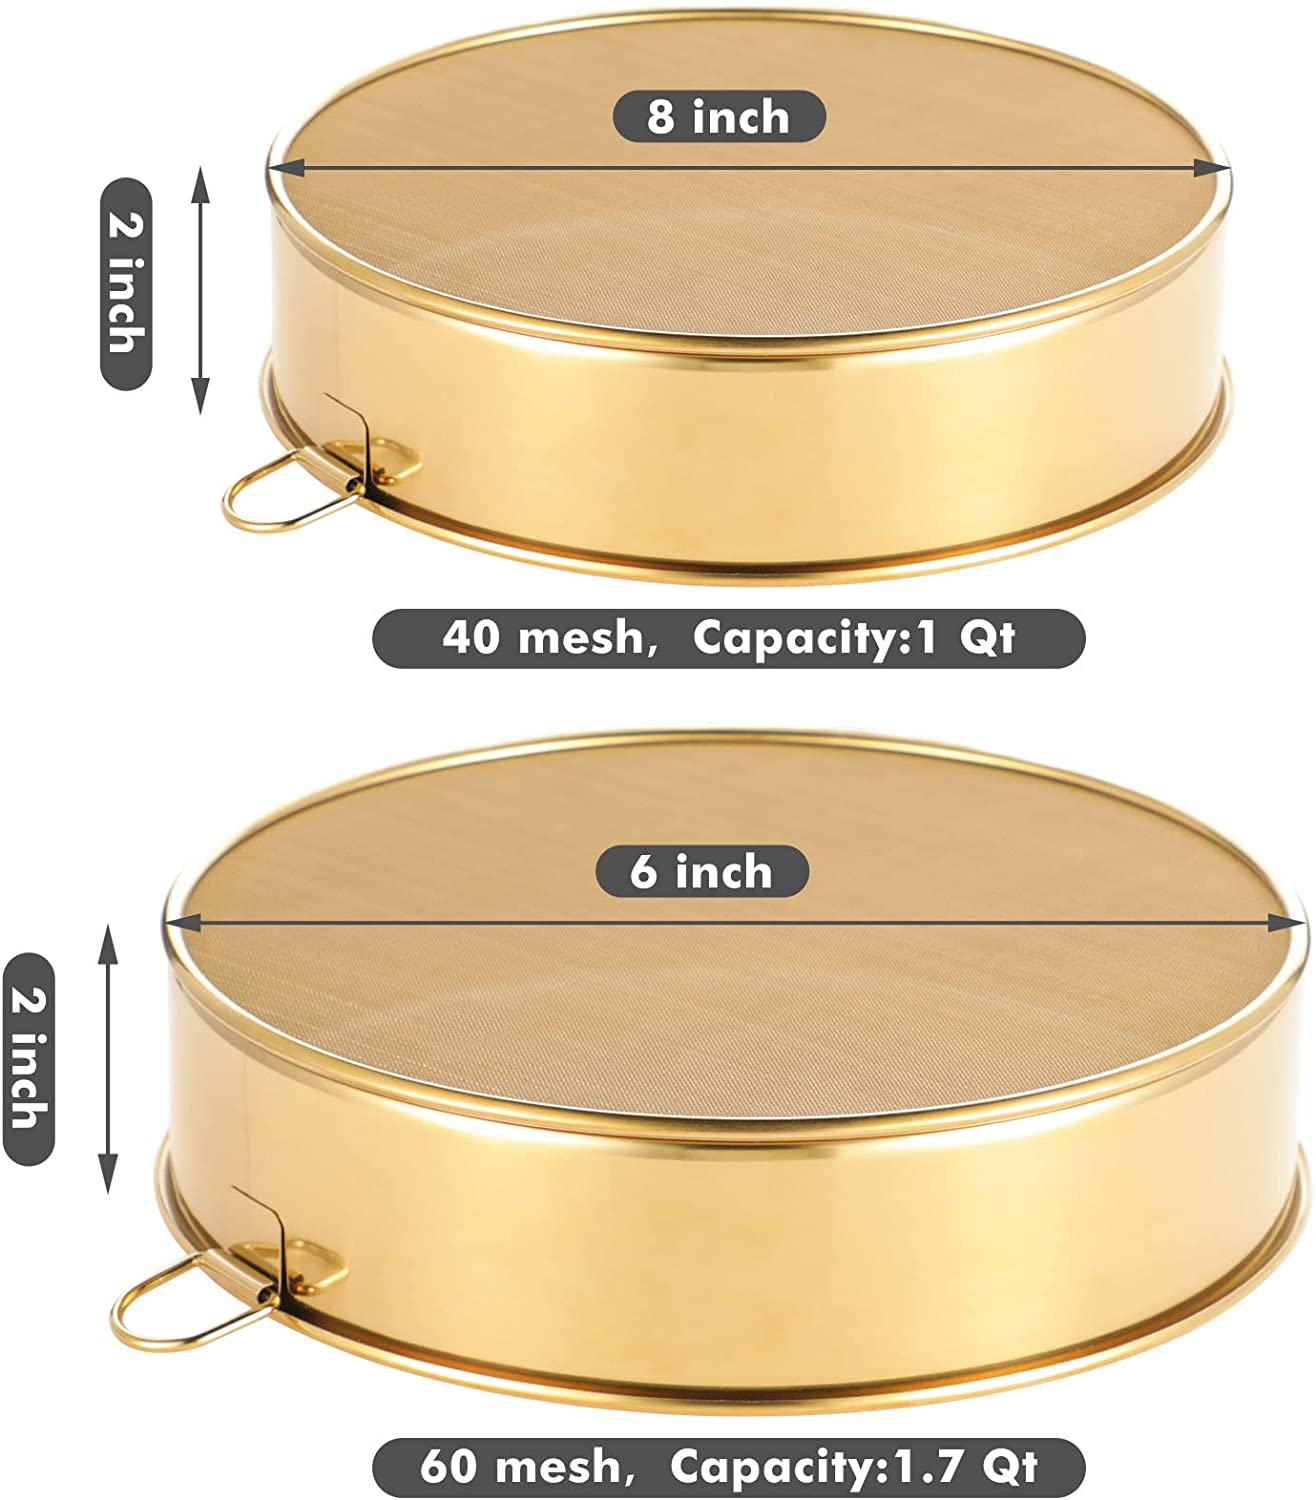 Webake 6-Inch 8-Inch Stainless Steel Sifter Round Flour Sieves Fine Mesh Strainer,Set of 2 (Golden)